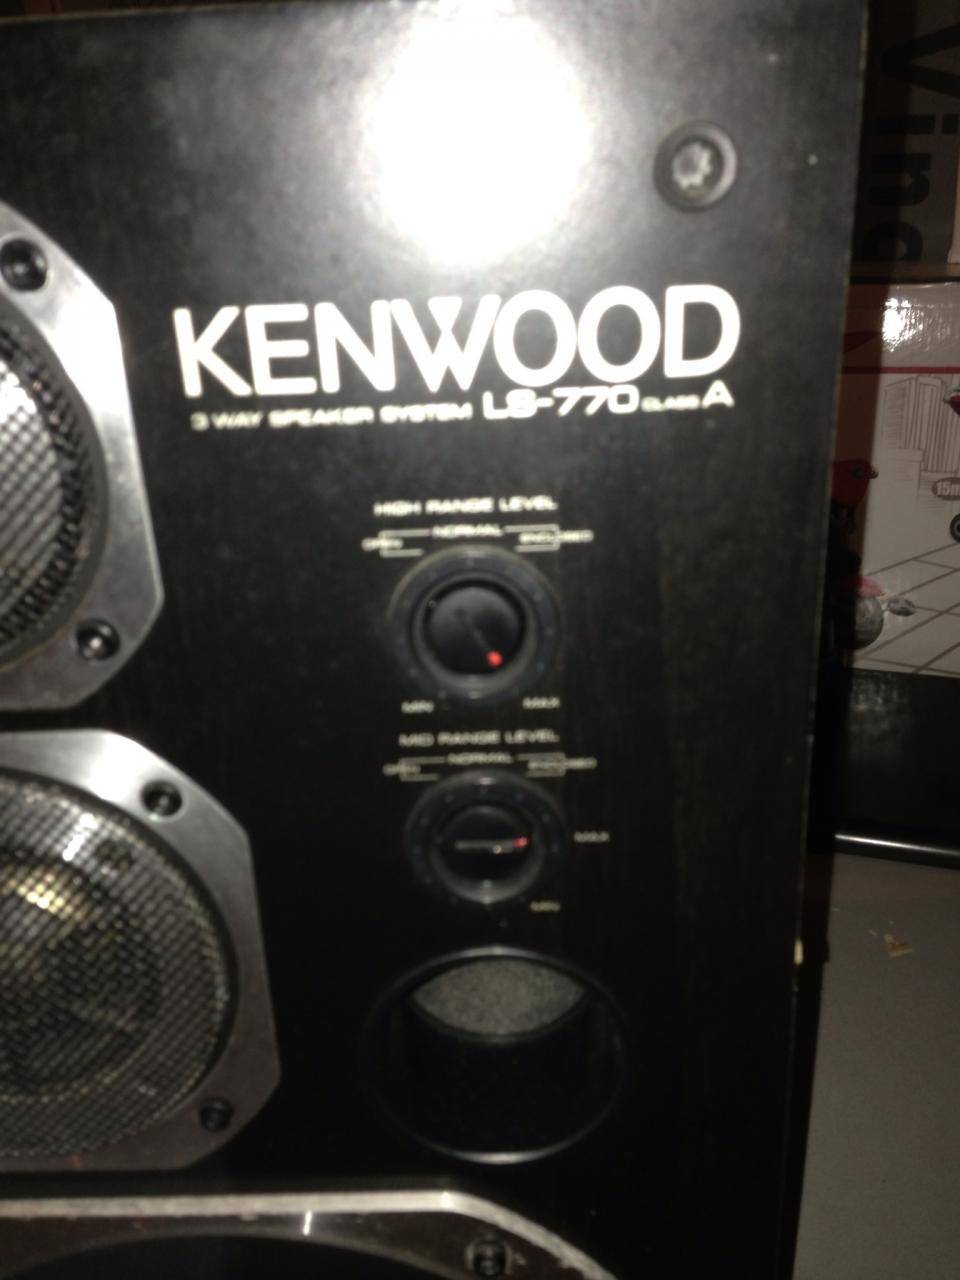 Kenwood LS-770A